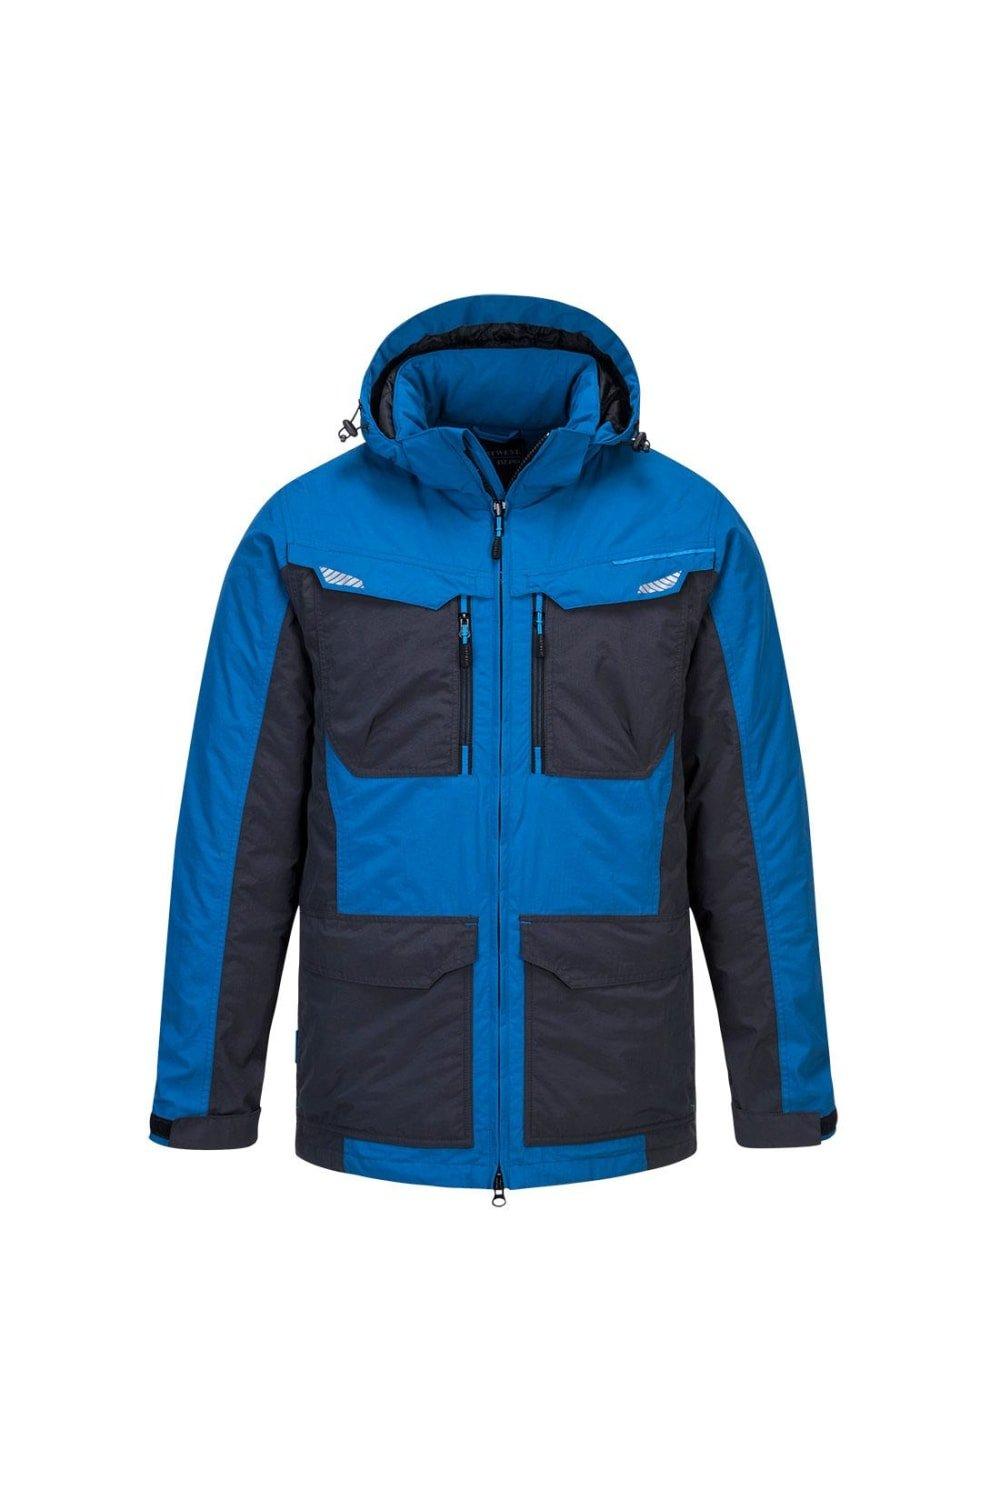 Зимняя куртка WX3 Portwest, синий